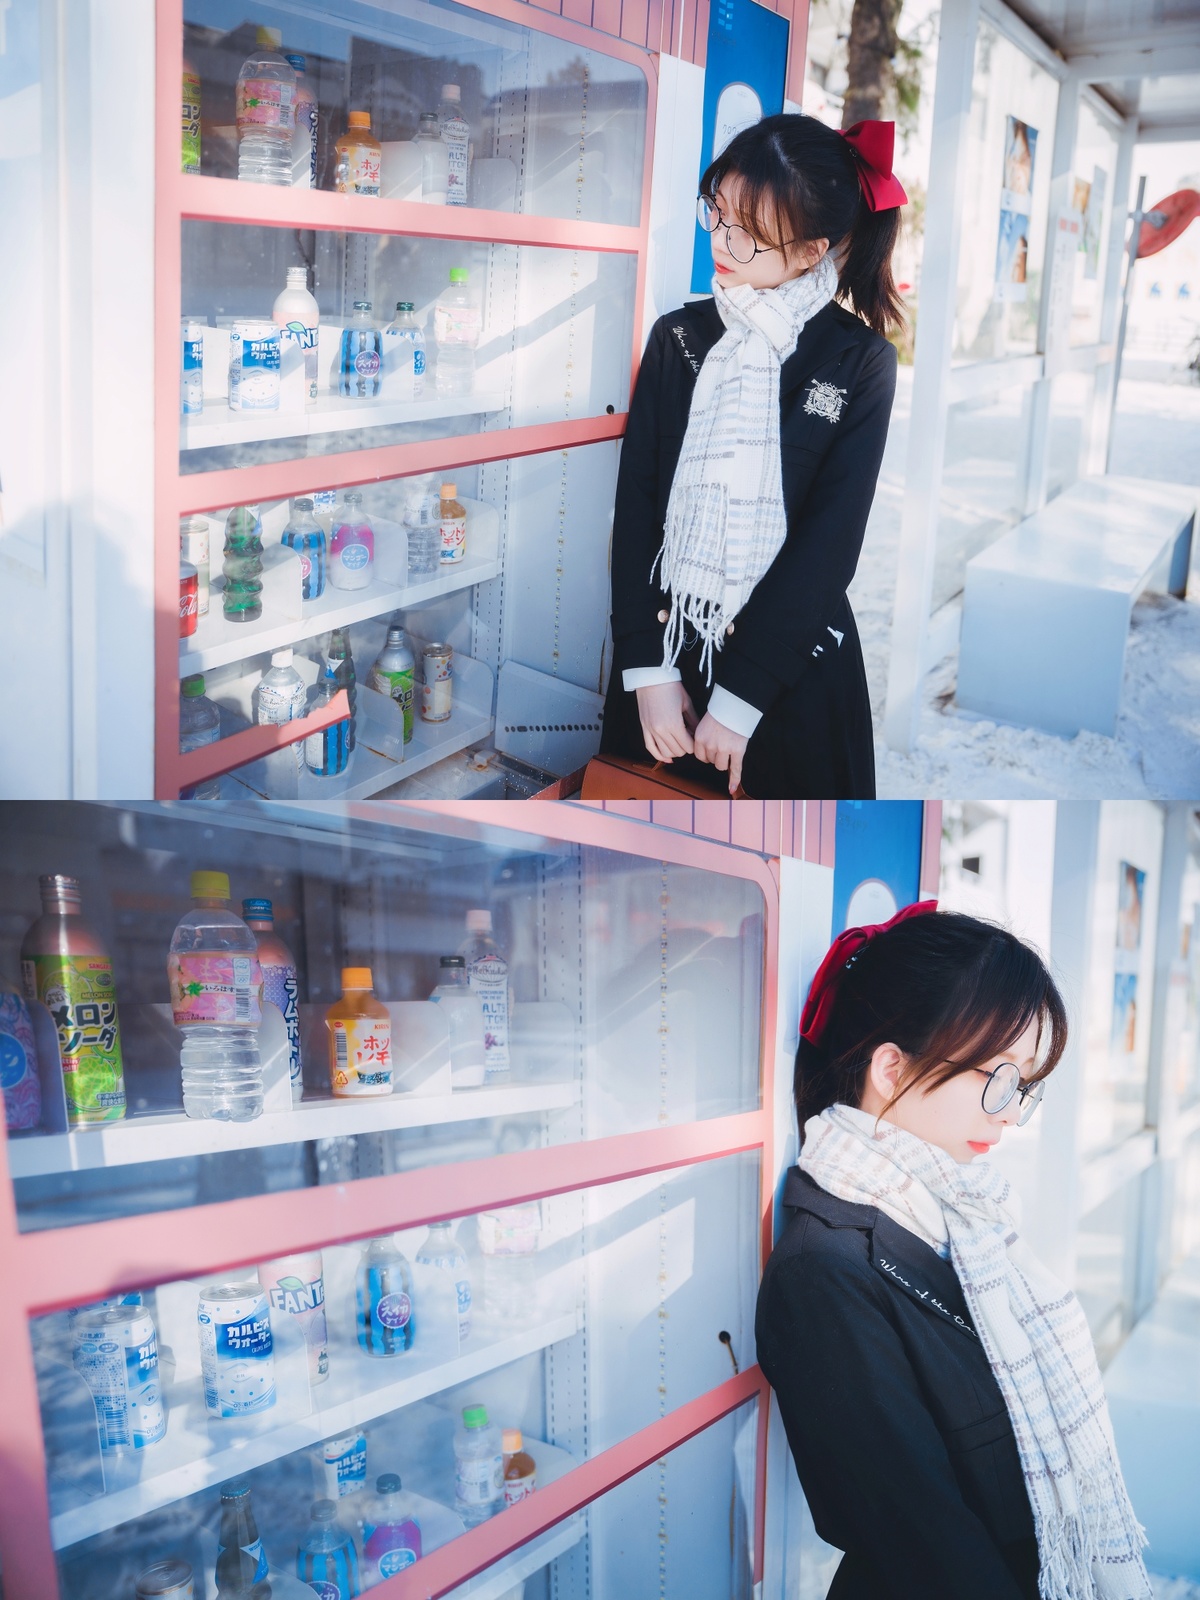 一个戴眼镜的女人站在冰箱旁边